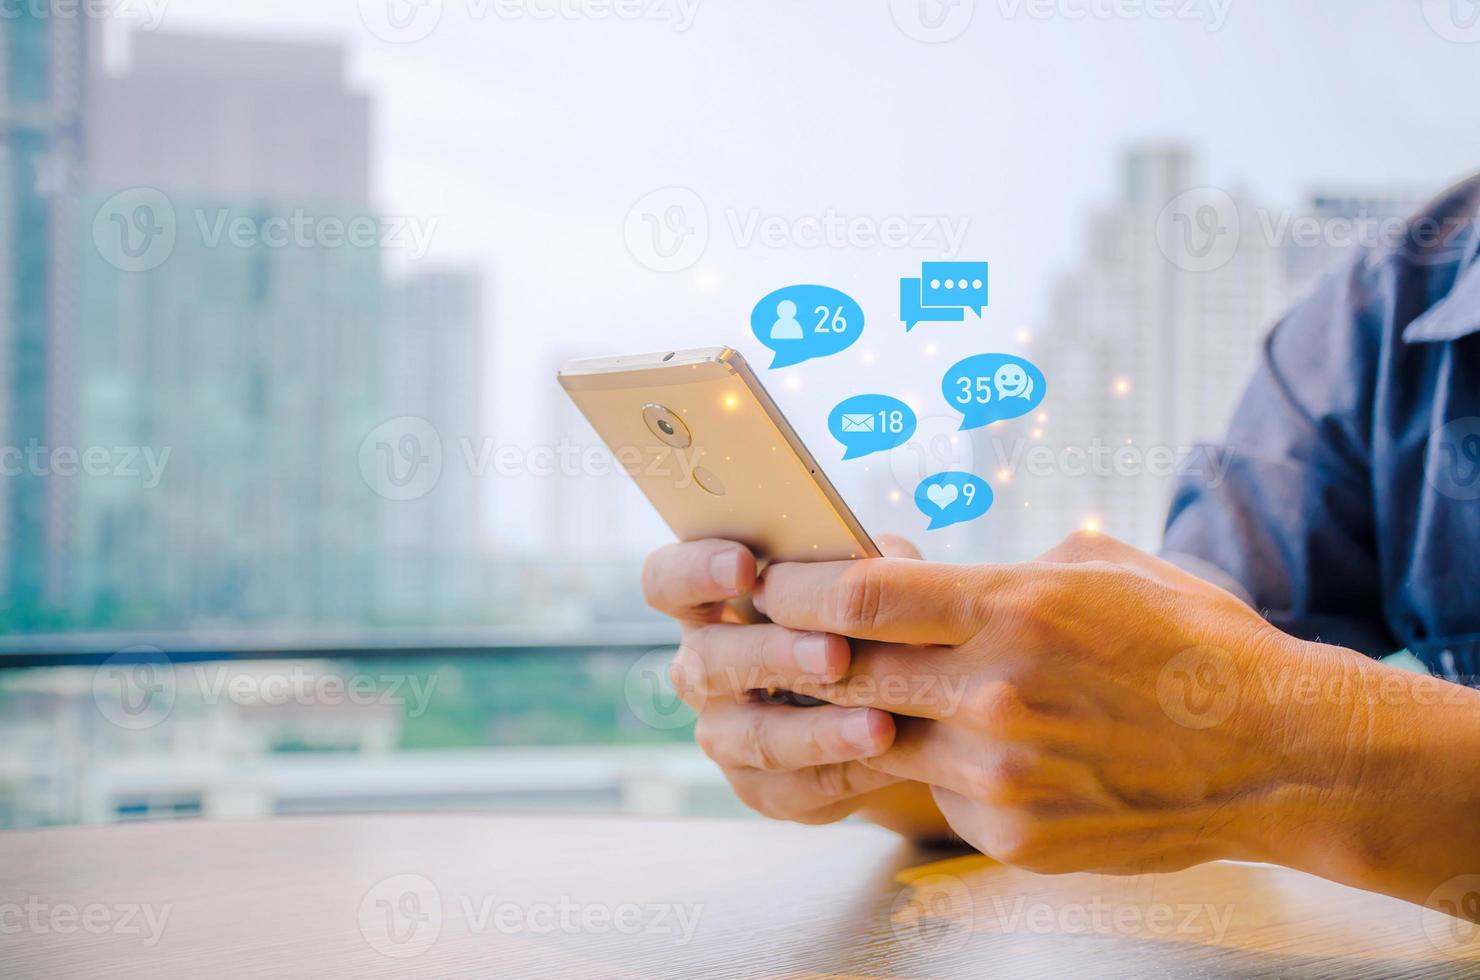 vista de primer plano del teléfono celular en manos de un hombre, persona que usa un concepto de marketing en medios sociales en un teléfono móvil con íconos de notificación de me gusta, mensaje, comentario y estrella sobre la pantalla del teléfono inteligente foto